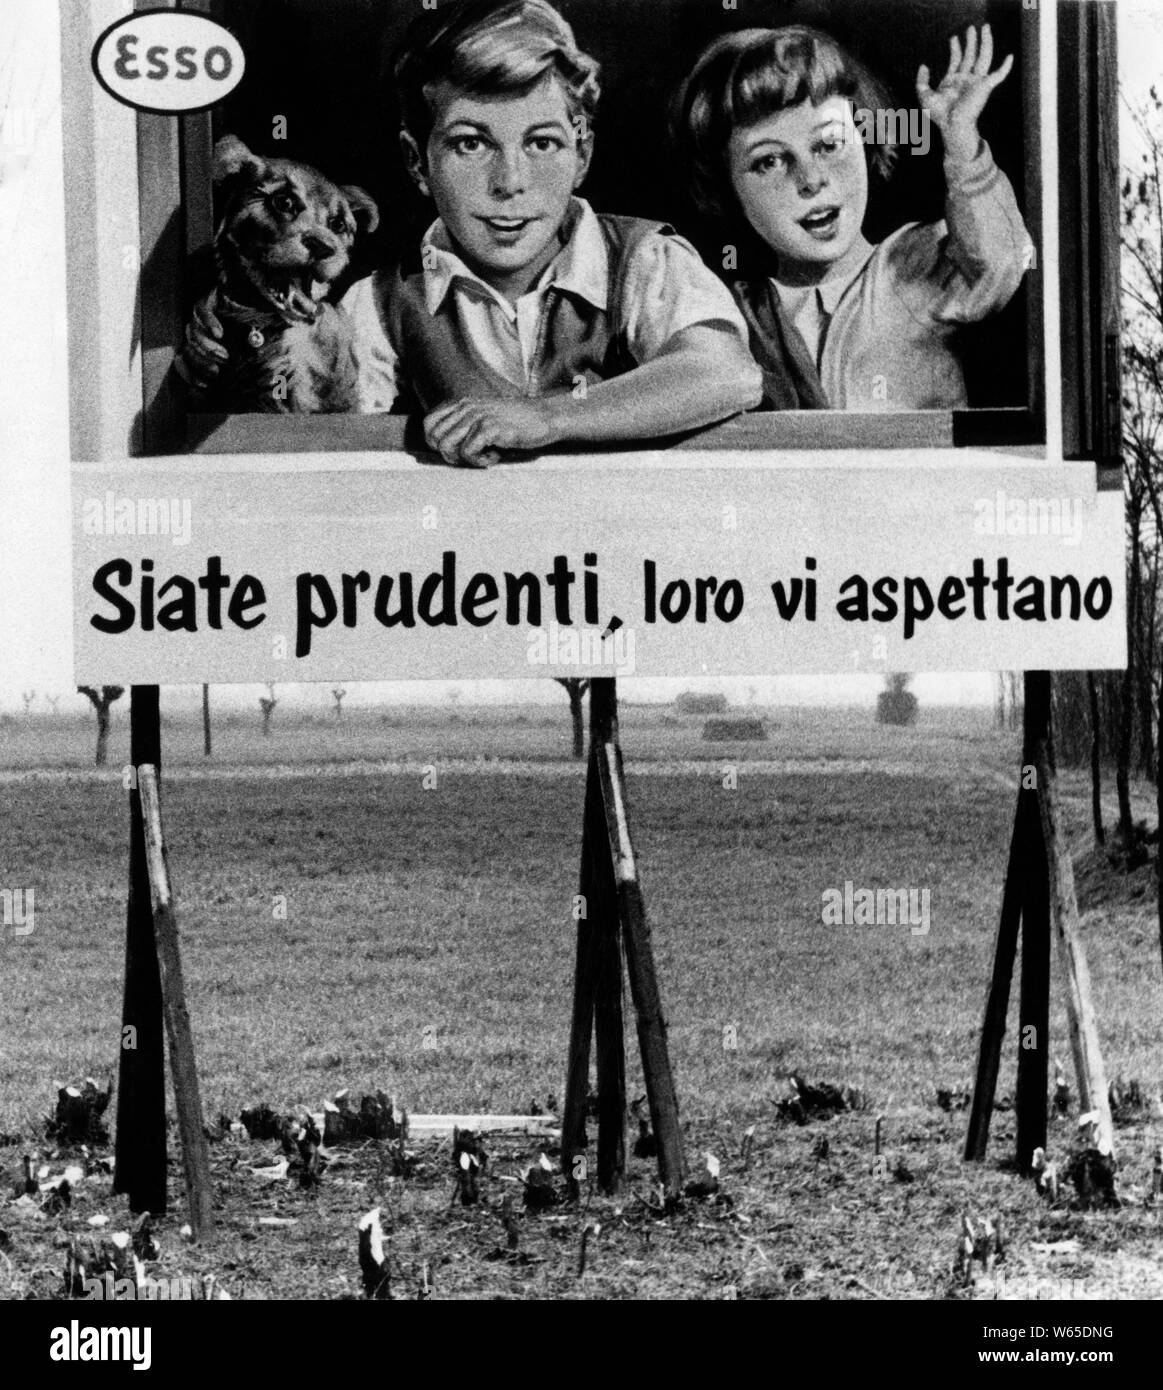 Panneau publicitaire esso, Italie 1958 Banque D'Images